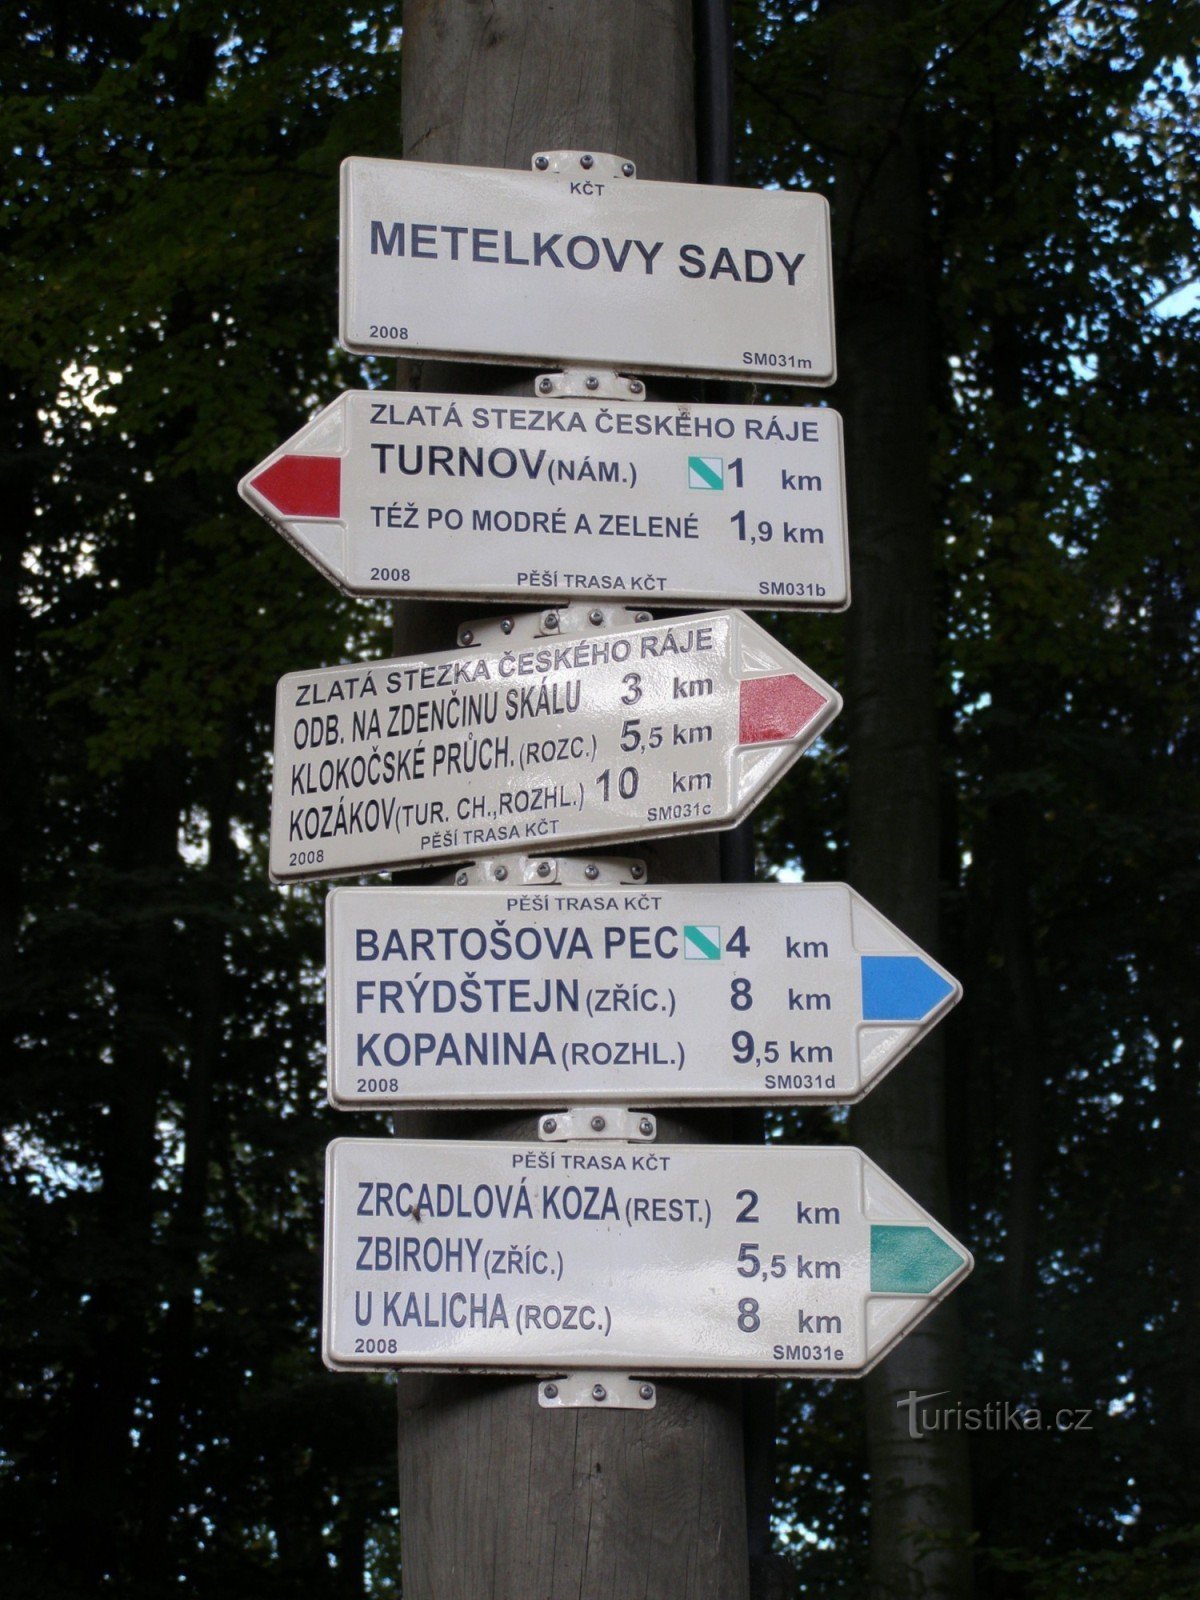 τουριστικό σταυροδρόμι Turnov - Metelkovy sady